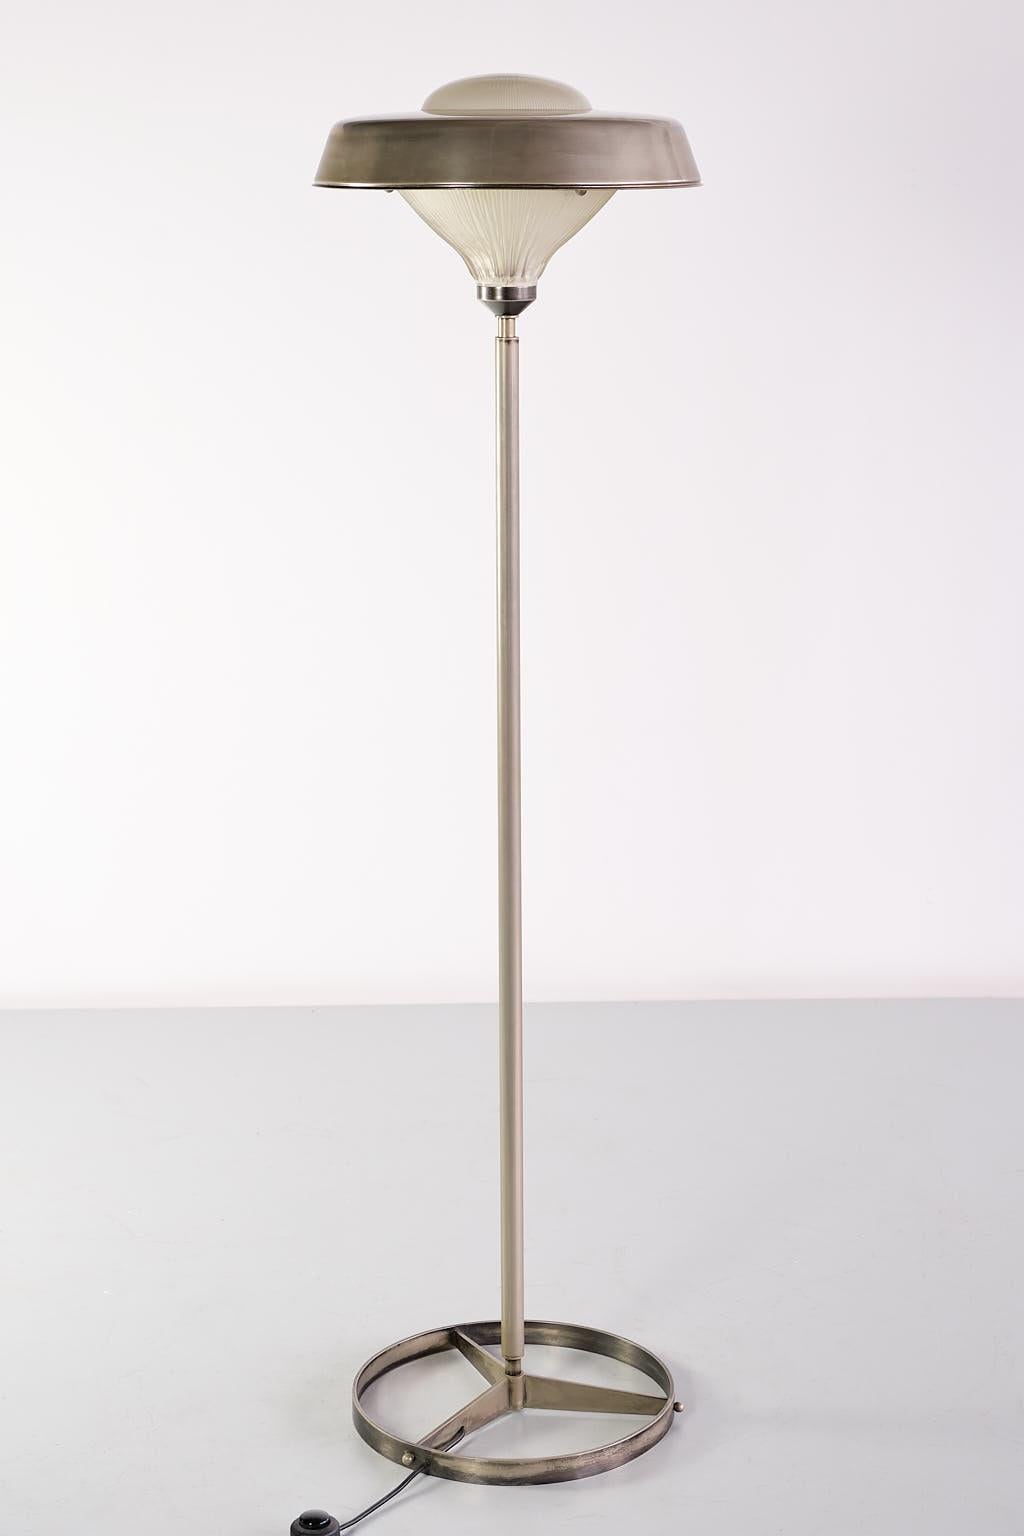 Ce rare lampadaire a été conçu par le Studio BBPR et produit par Artemide, en Italie, en 1962. Le design frappant consiste en une base circulaire en acier nickelé avec trois parties menant à la tige centrale en acier tubulaire. L'abat-jour est en